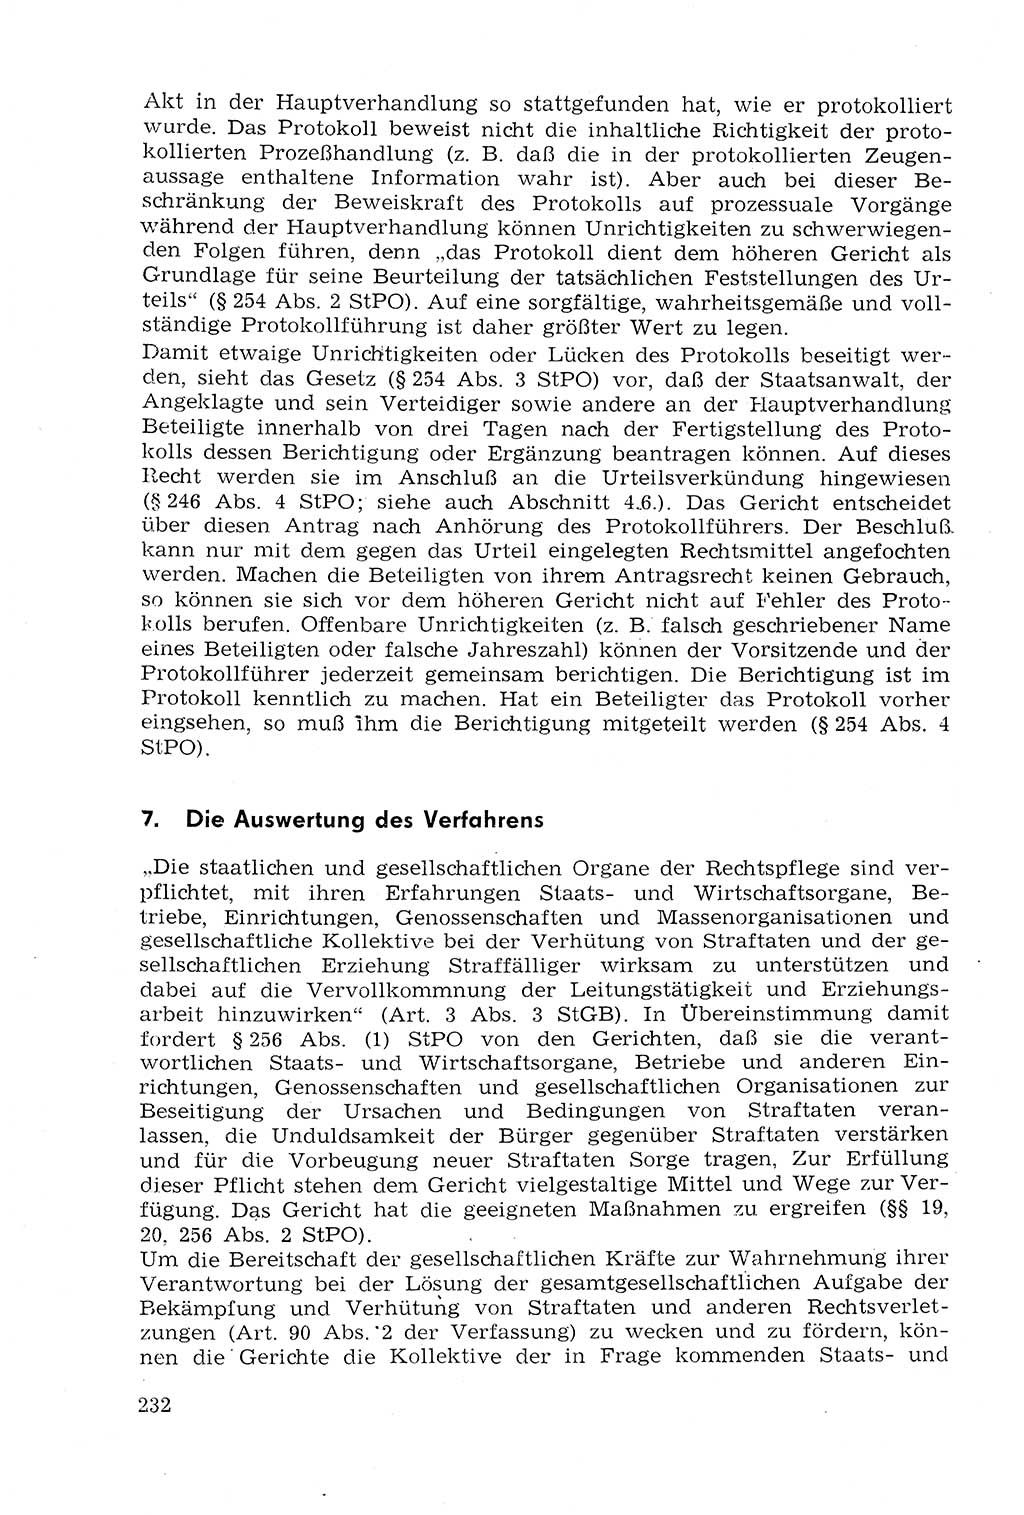 Strafprozeßrecht der DDR (Deutsche Demokratische Republik), Lehrmaterial 1969, Seite 232 (Strafprozeßr. DDR Lehrmat. 1969, S. 232)